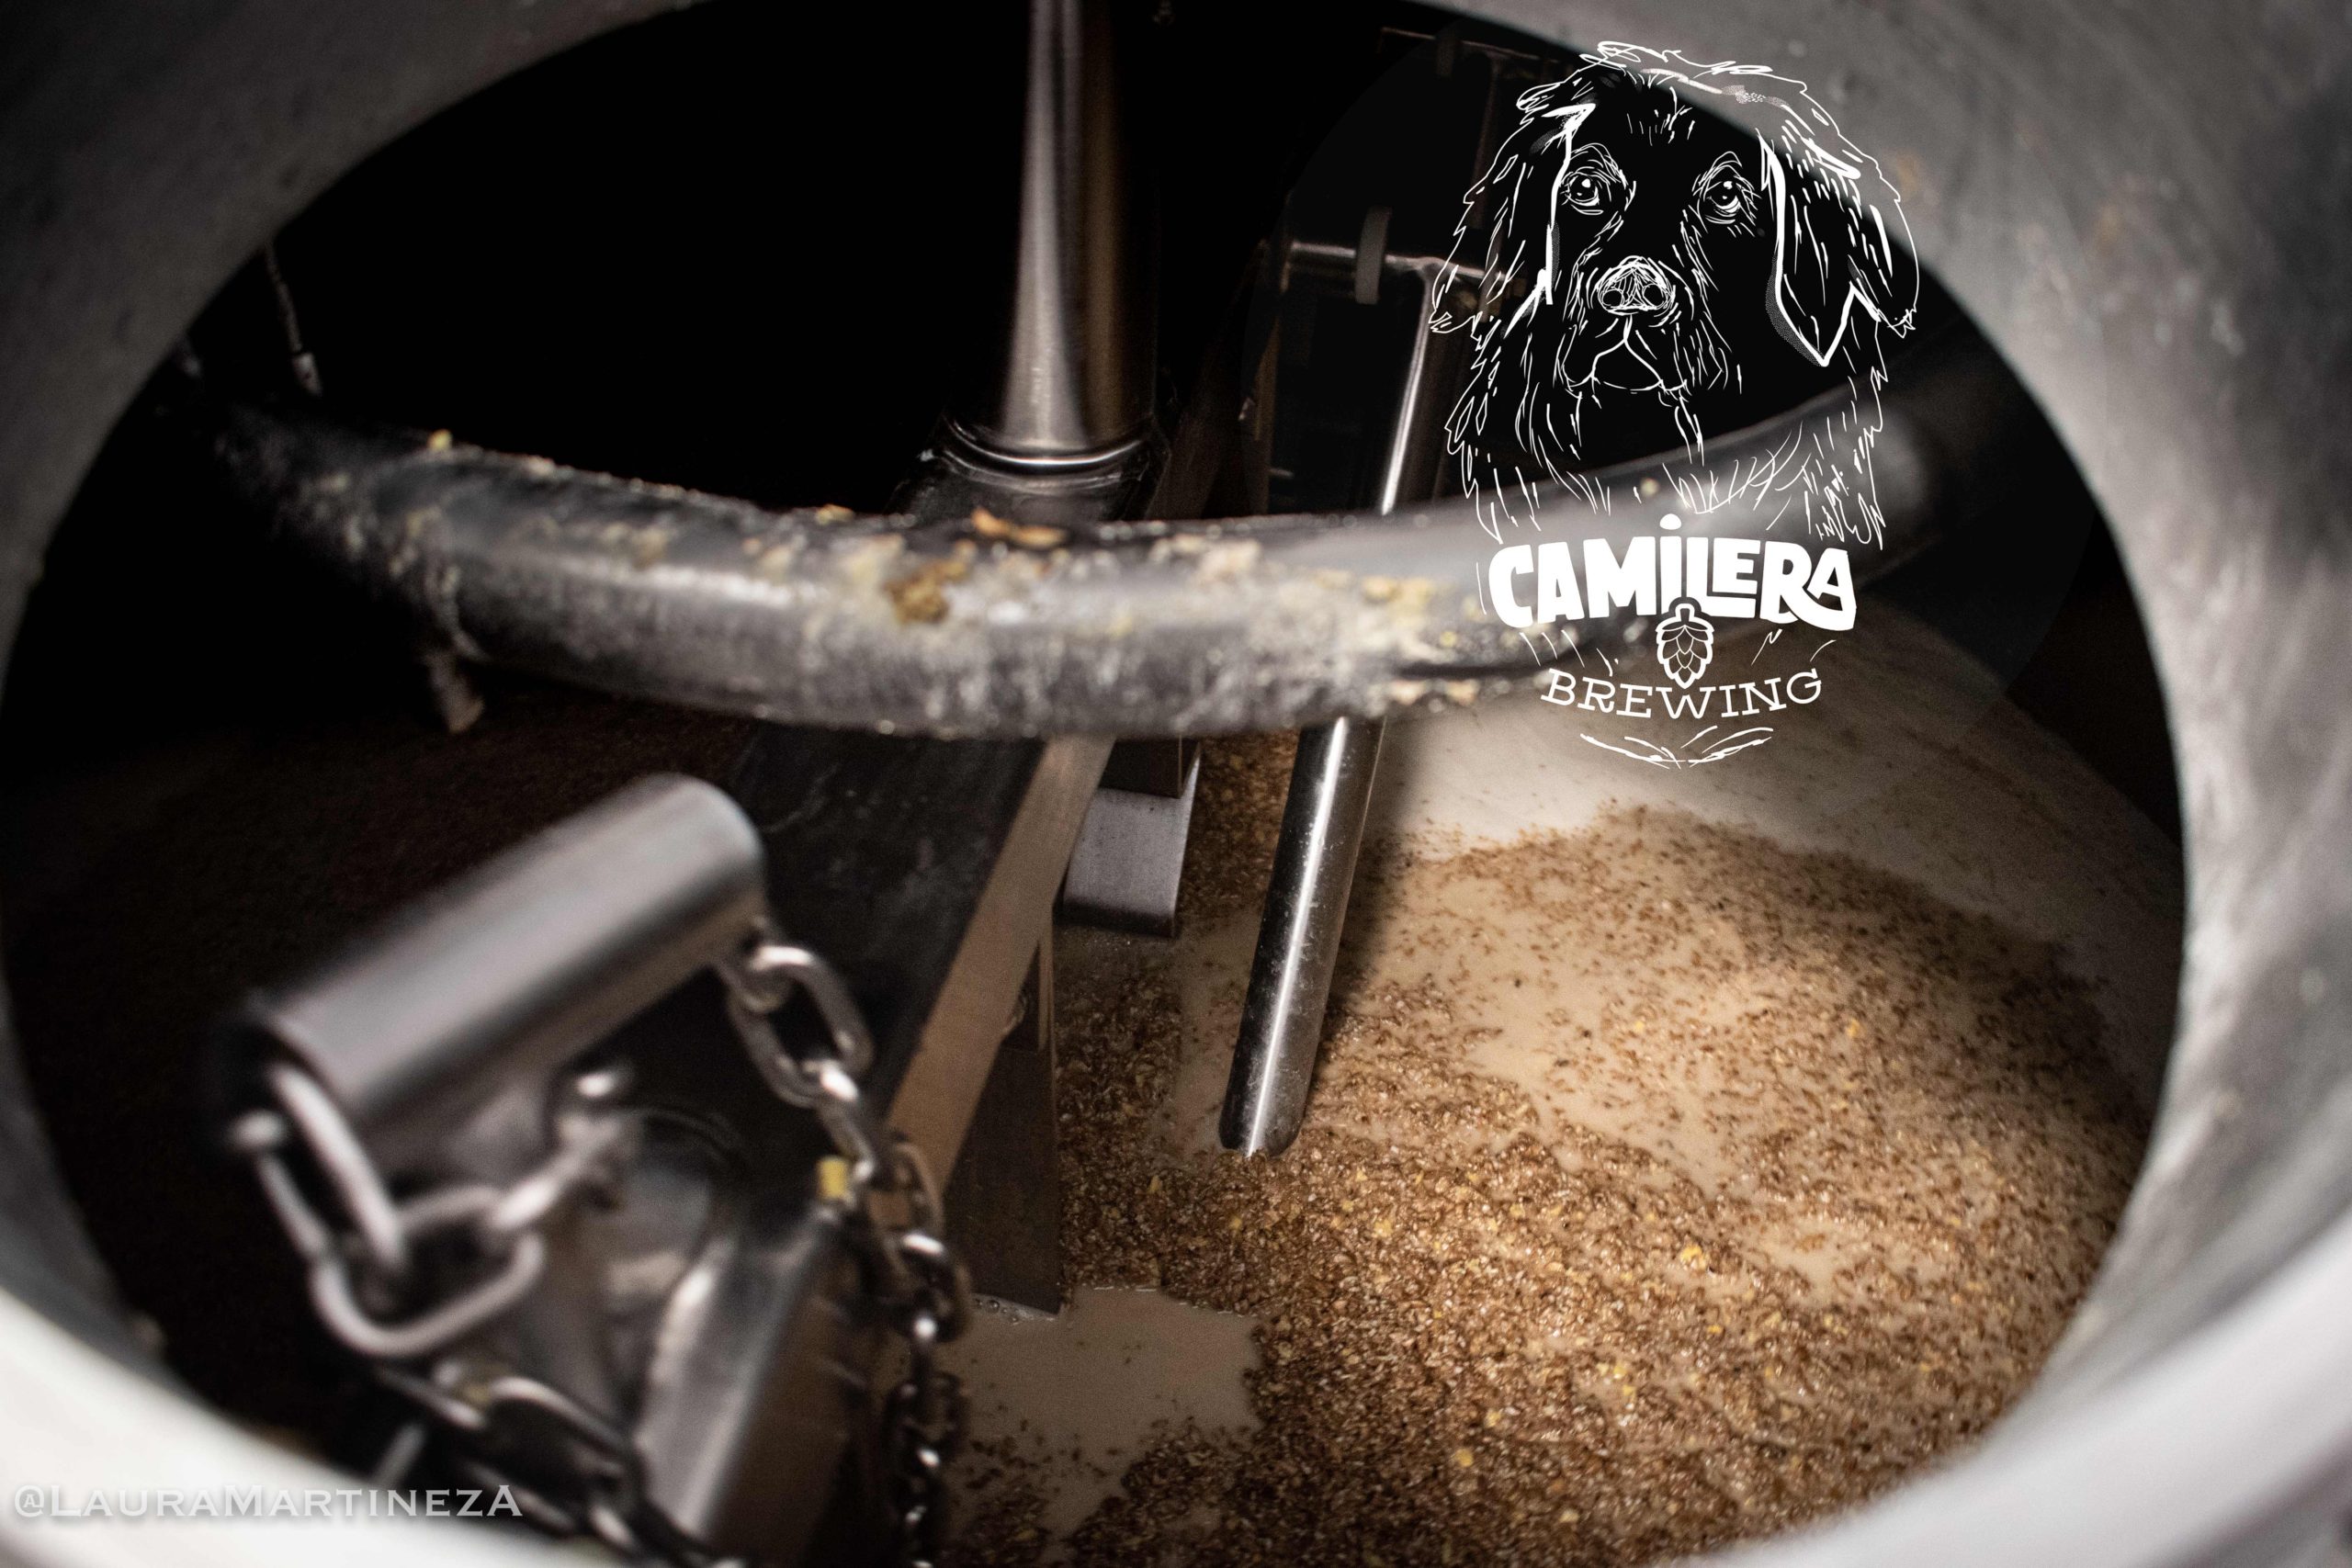 Camilera Brewing